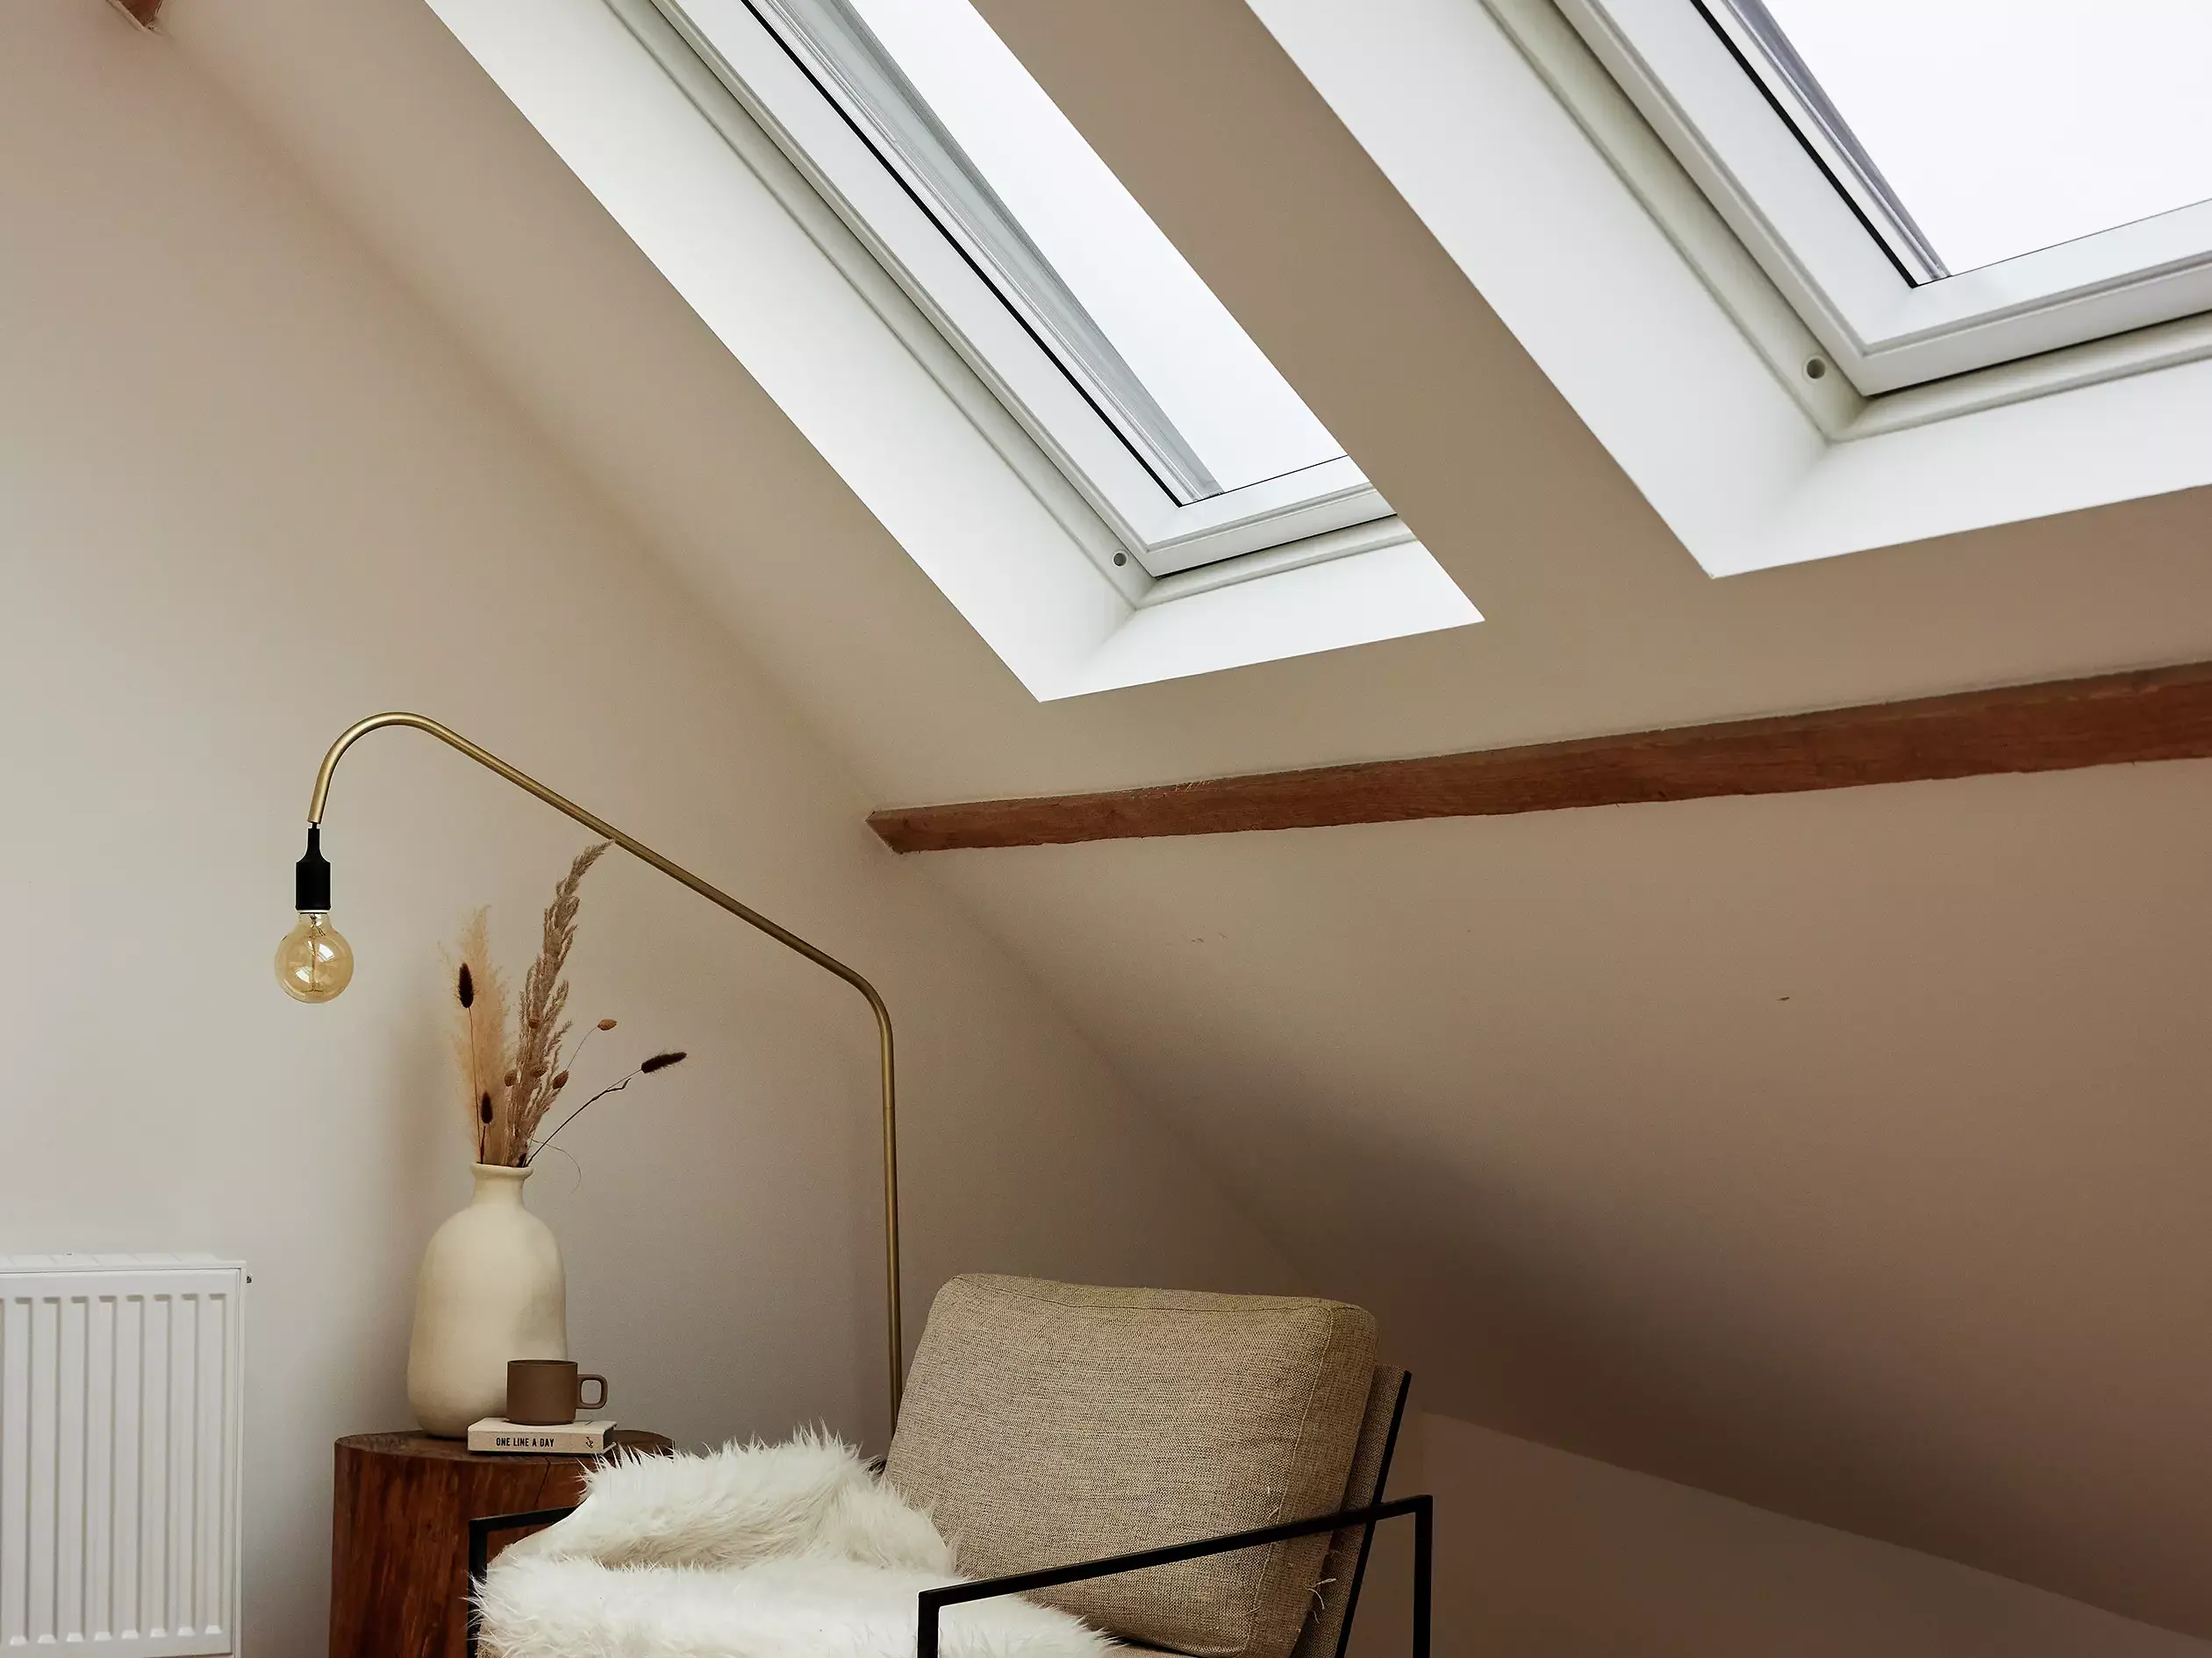 Fauteuil avec couverture et lampe dans un salon sous des fenêtres de toit.